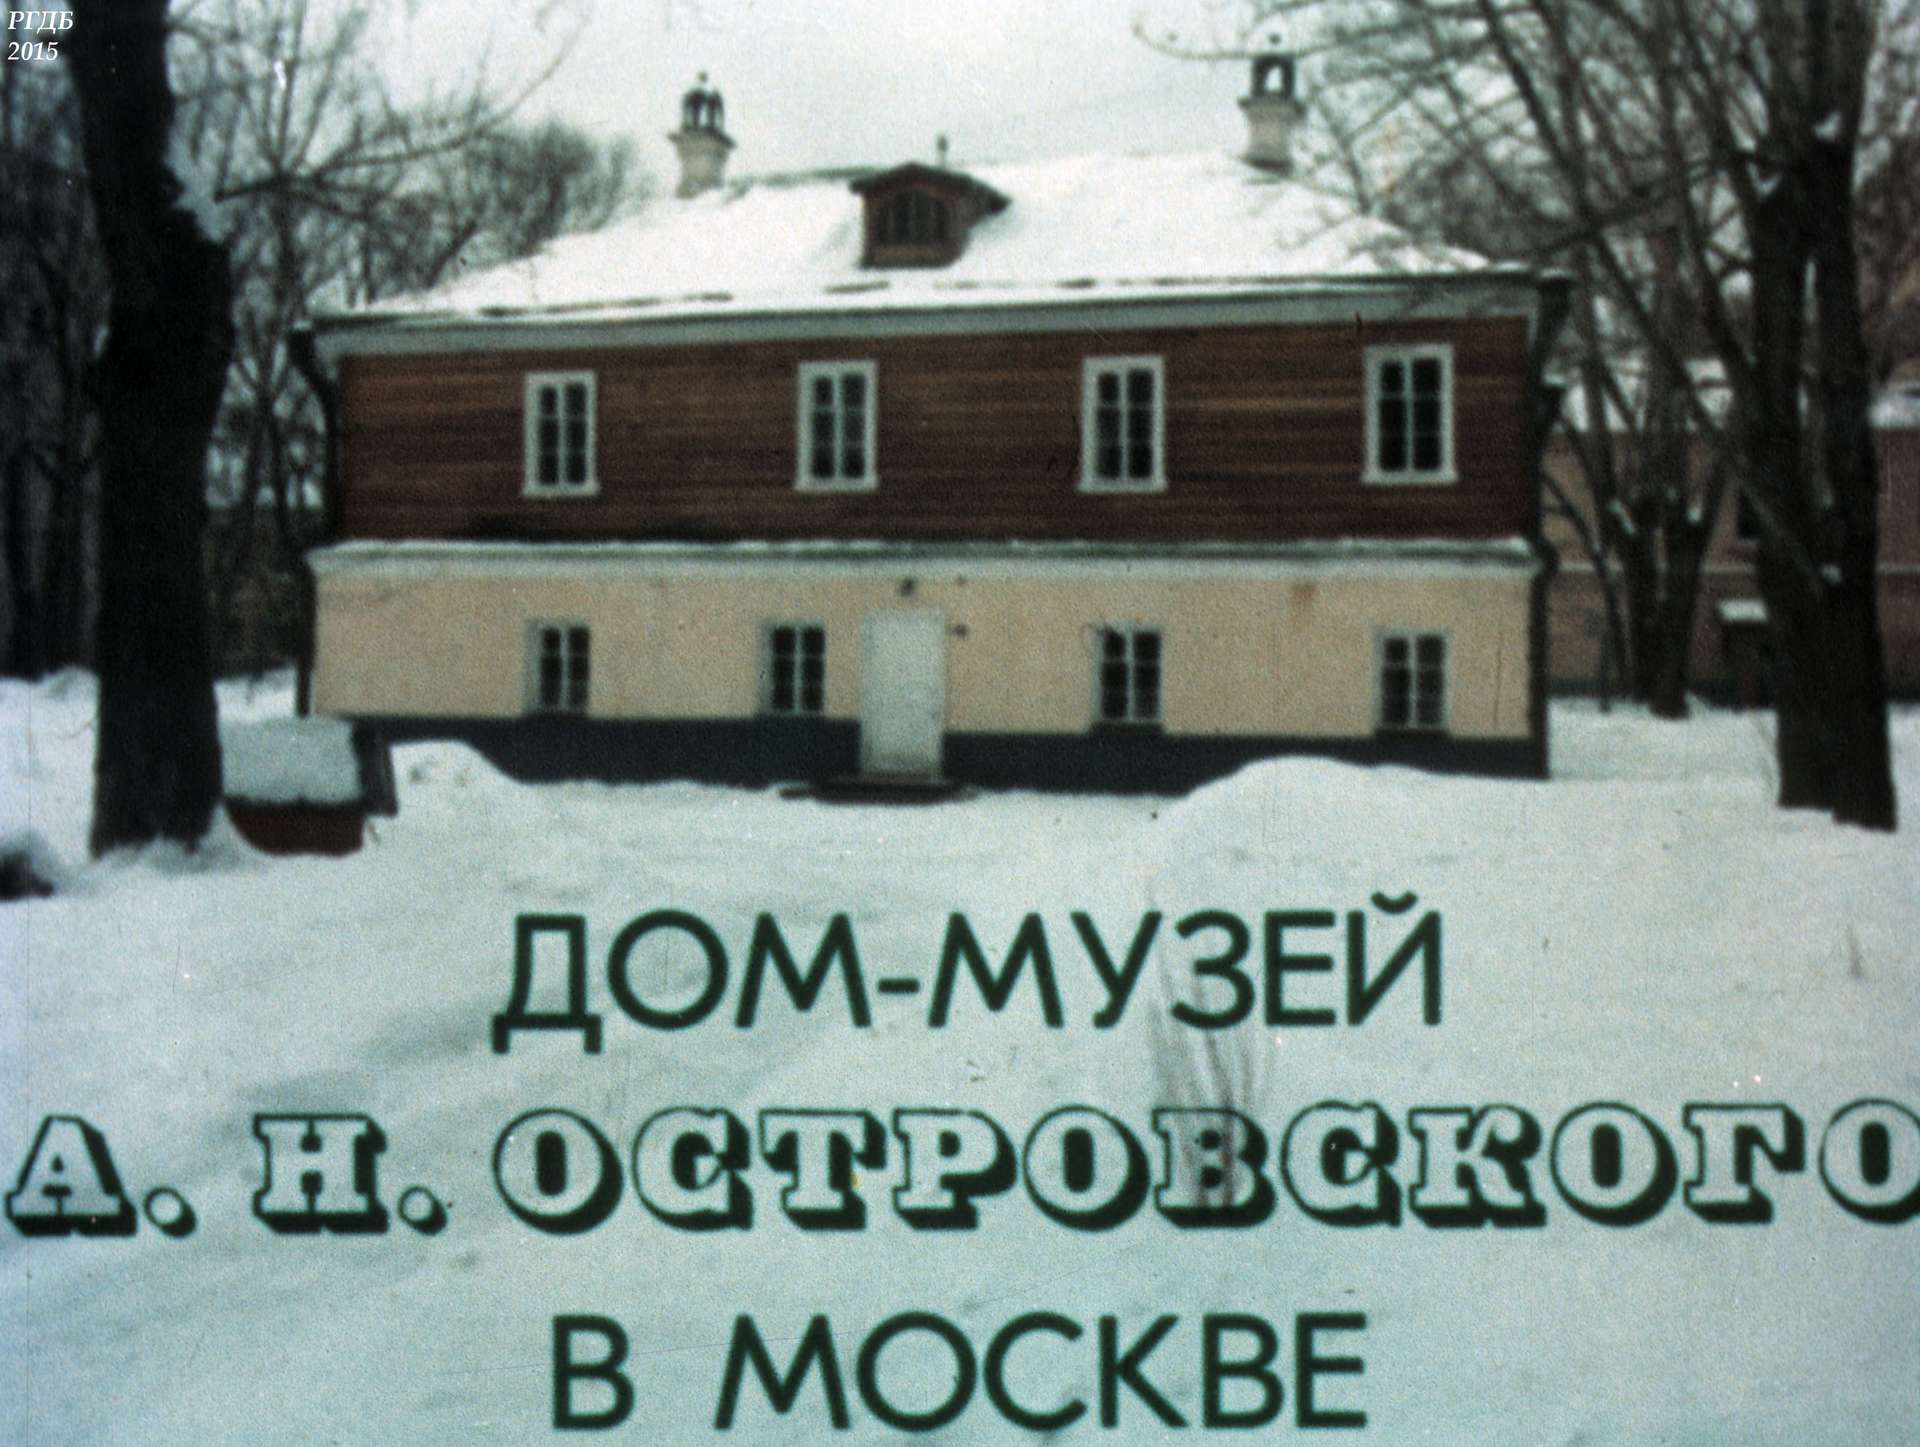 Дом-музей А. Н. Островского в Москве